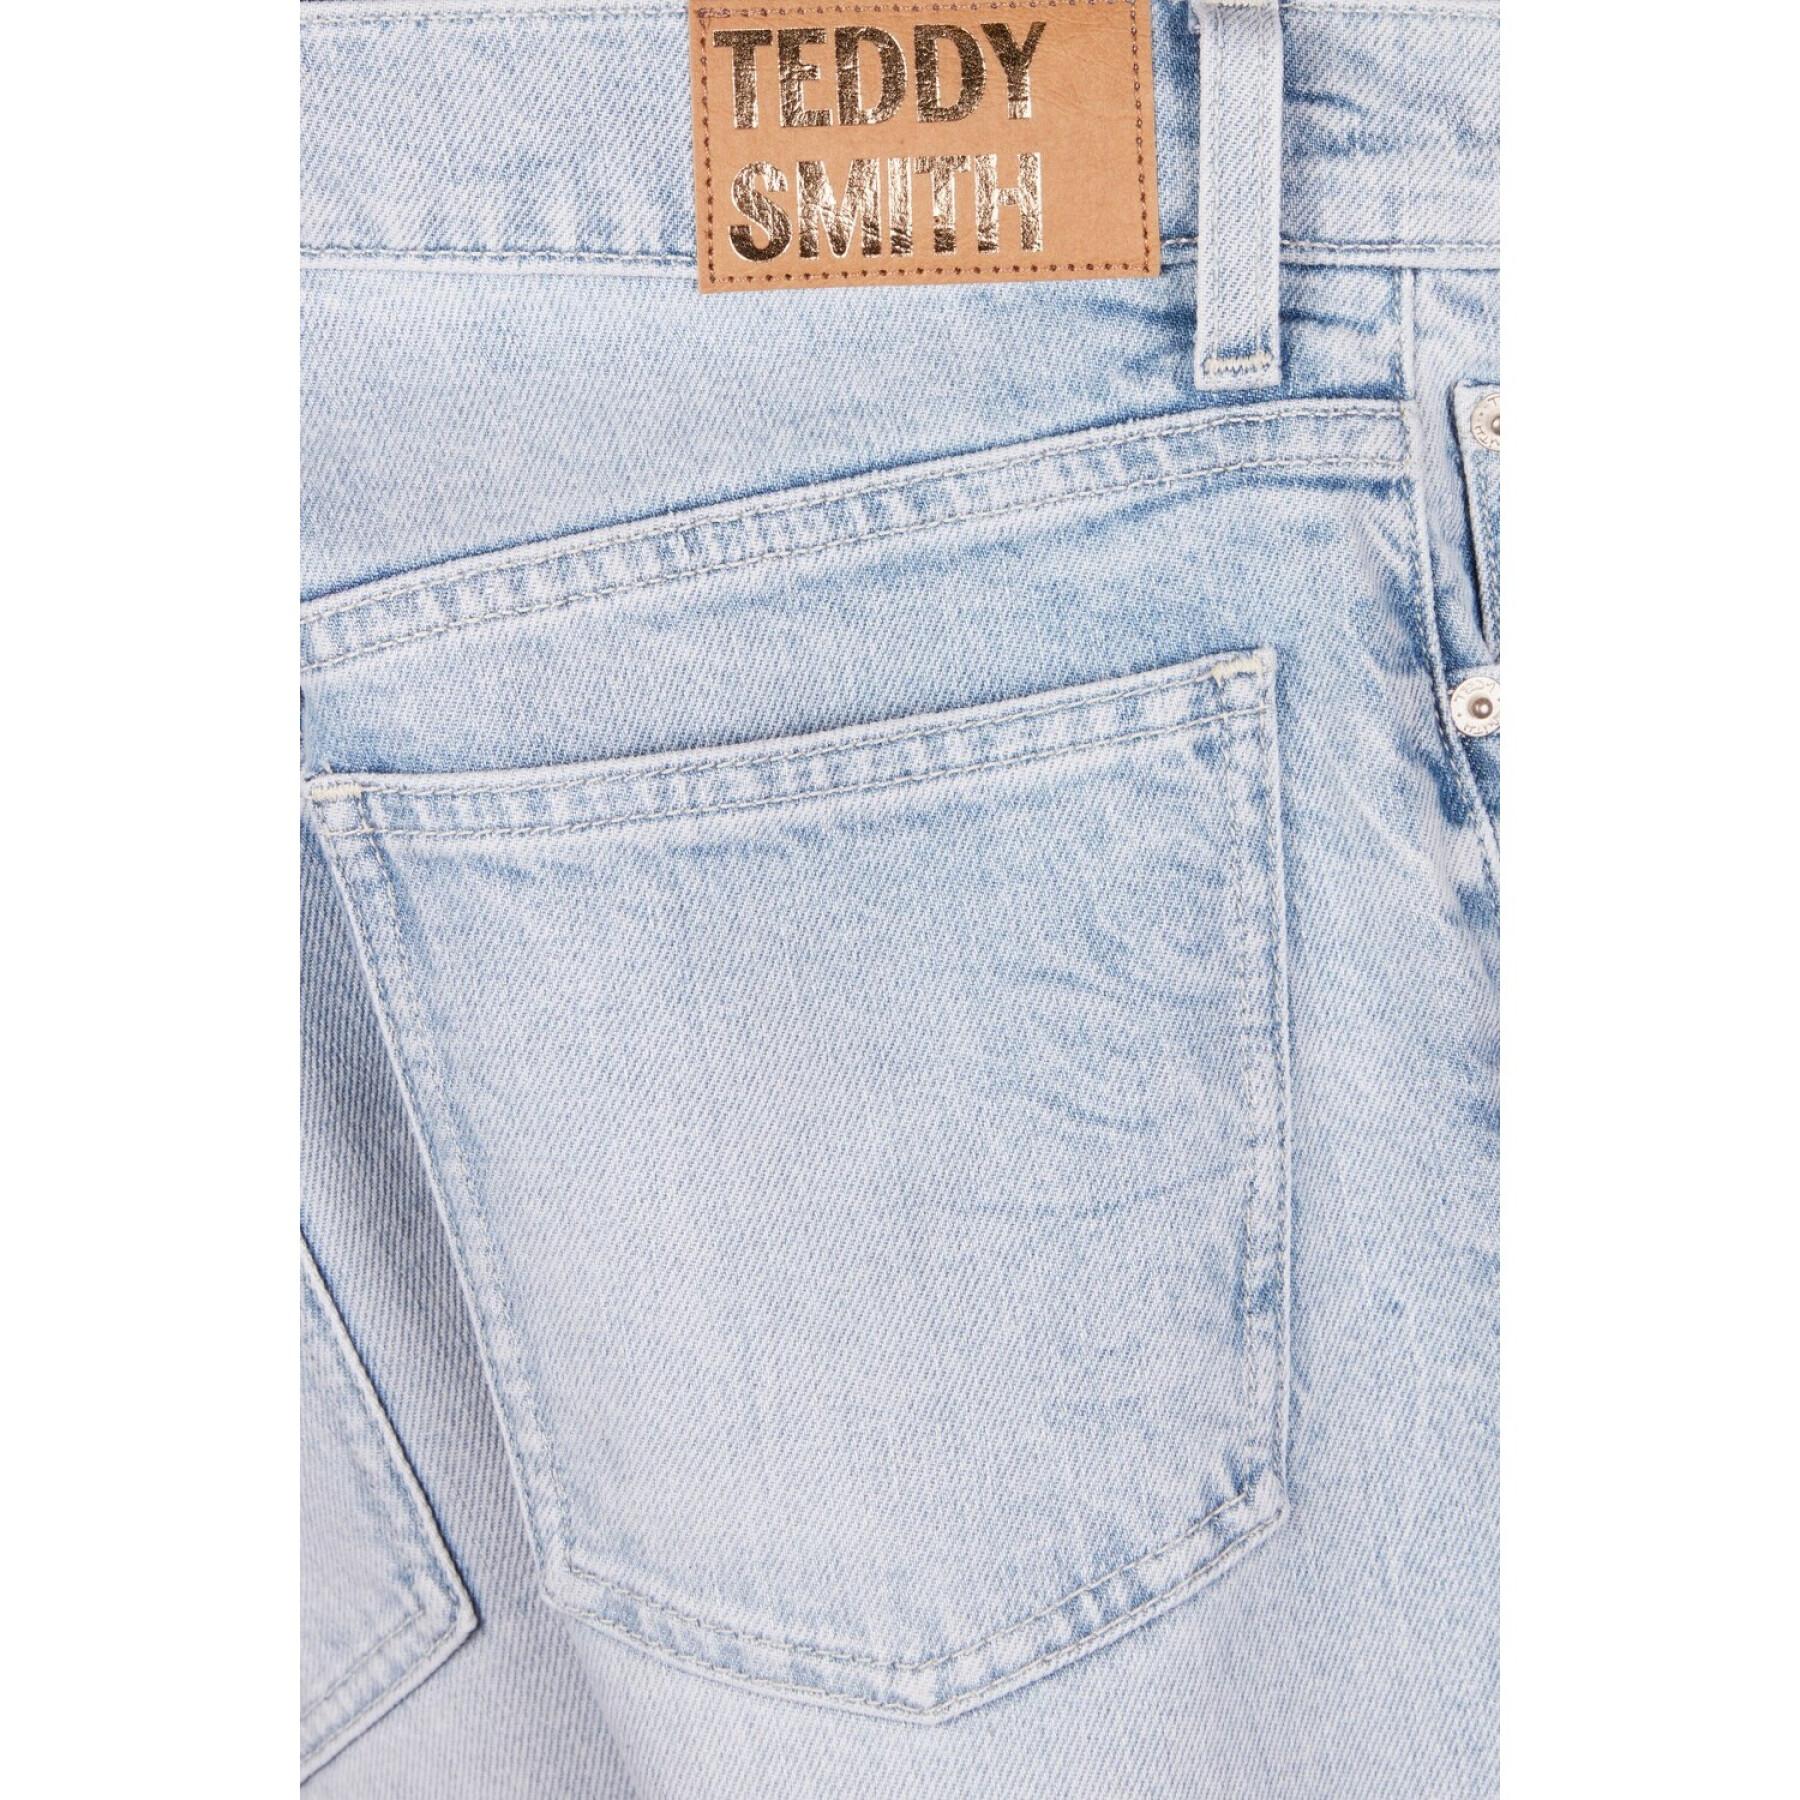 Women's jeans Teddy Smith Zoe HW